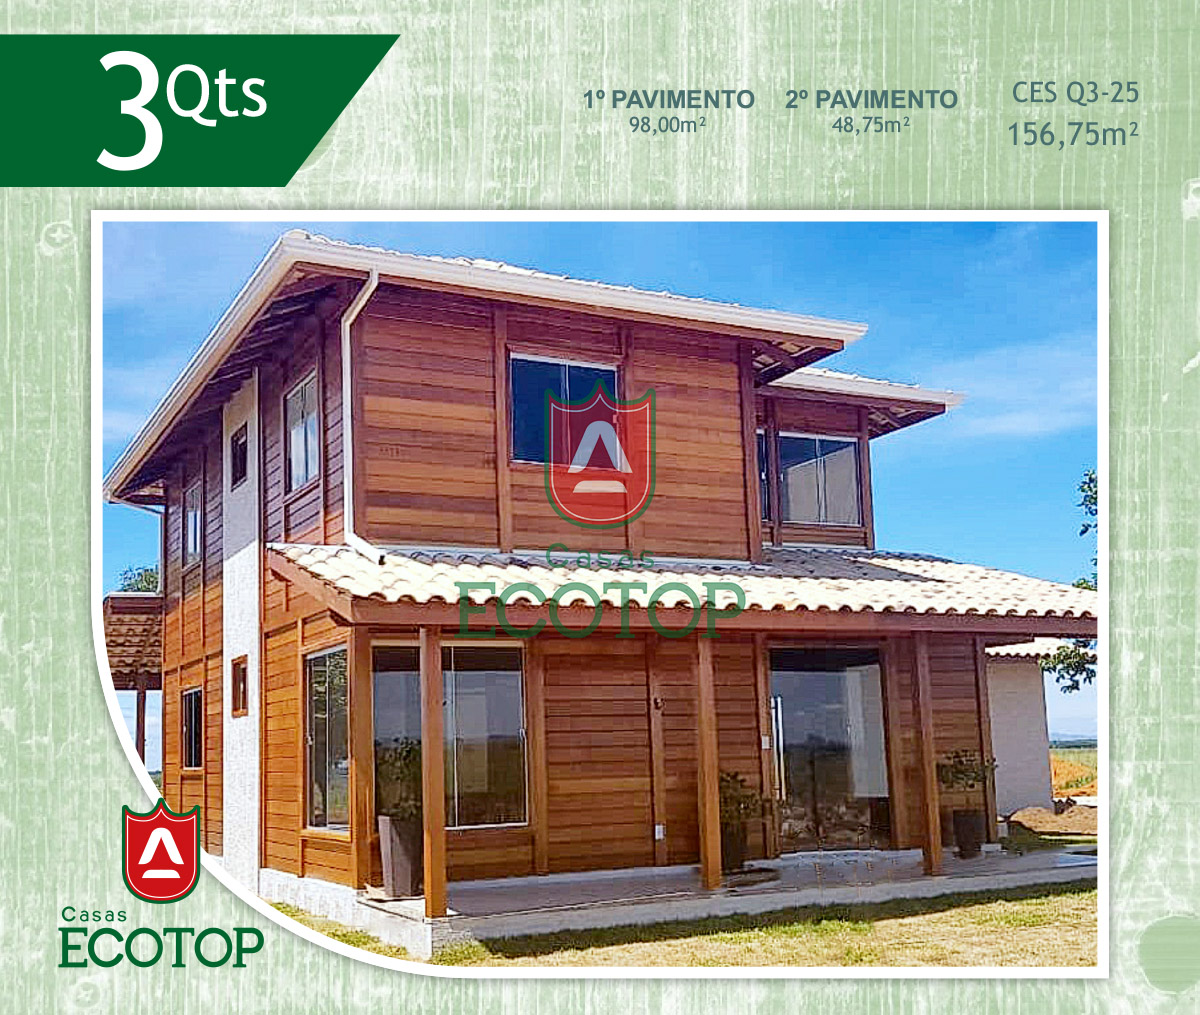 ces-25-fachada-casas-de-madeira-ecotop.cdr